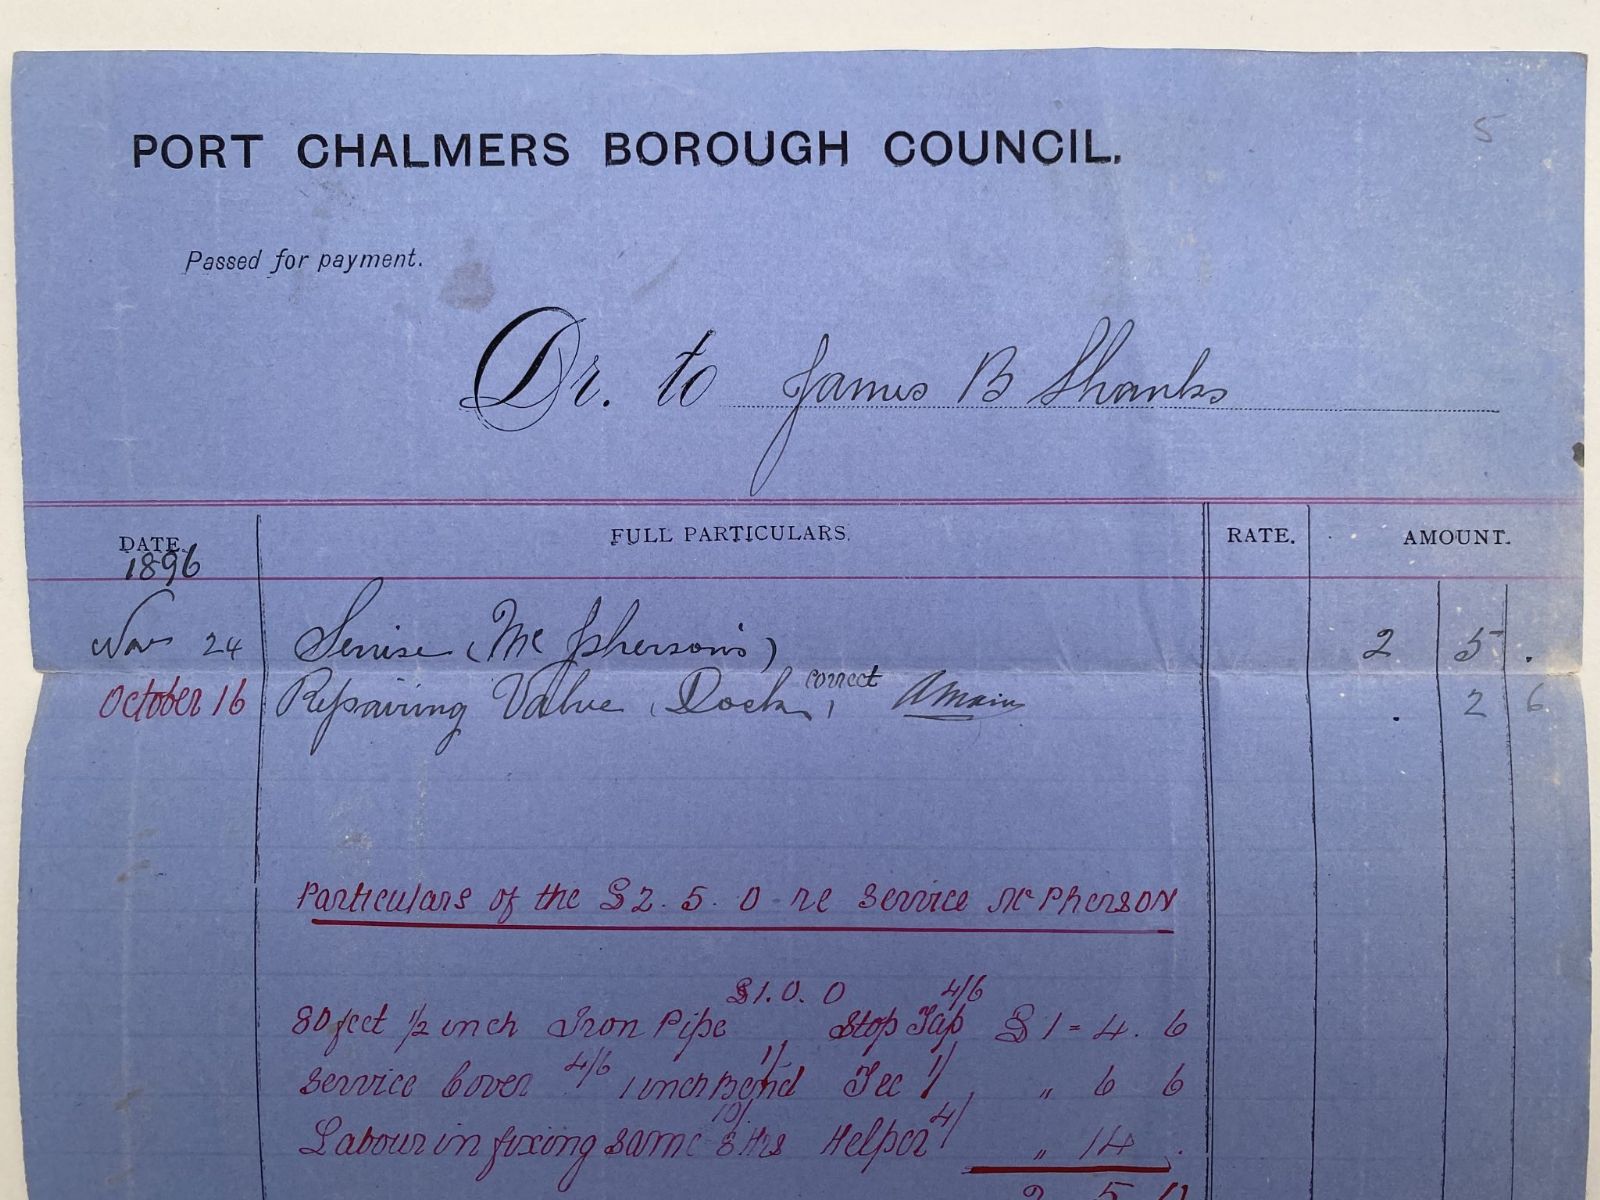 ANTIQUE INVOICE / RECEIPT: Port Chalmers Borough Council 1896